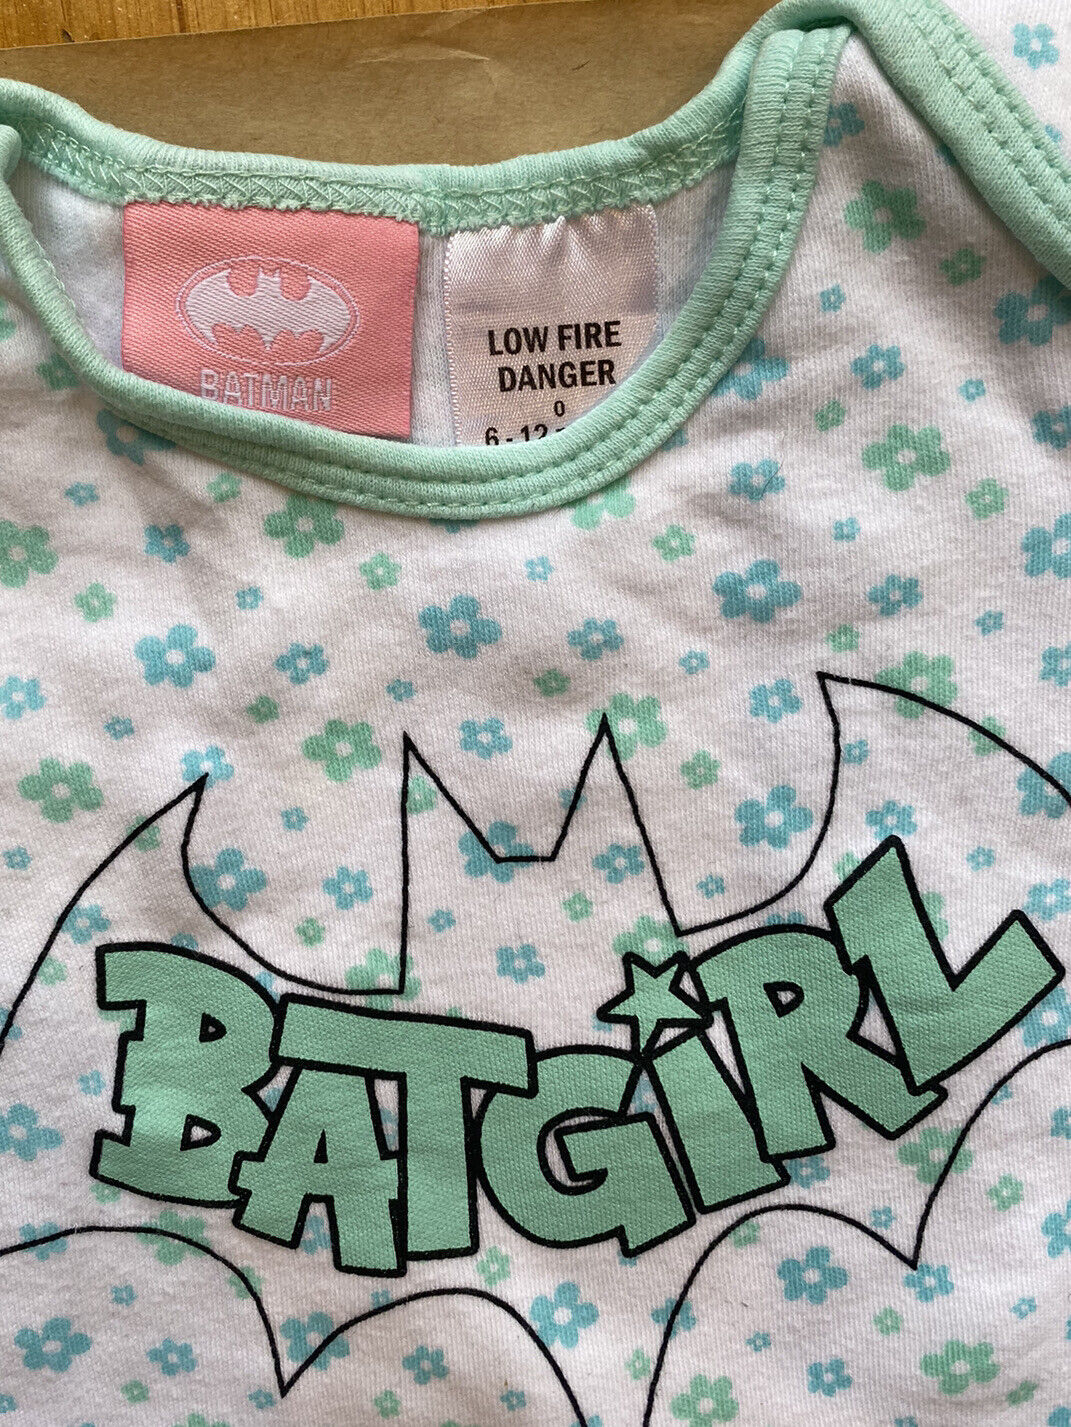 Batman baby girl size 6-12 months t-shirt bodysuit green floral Batgir